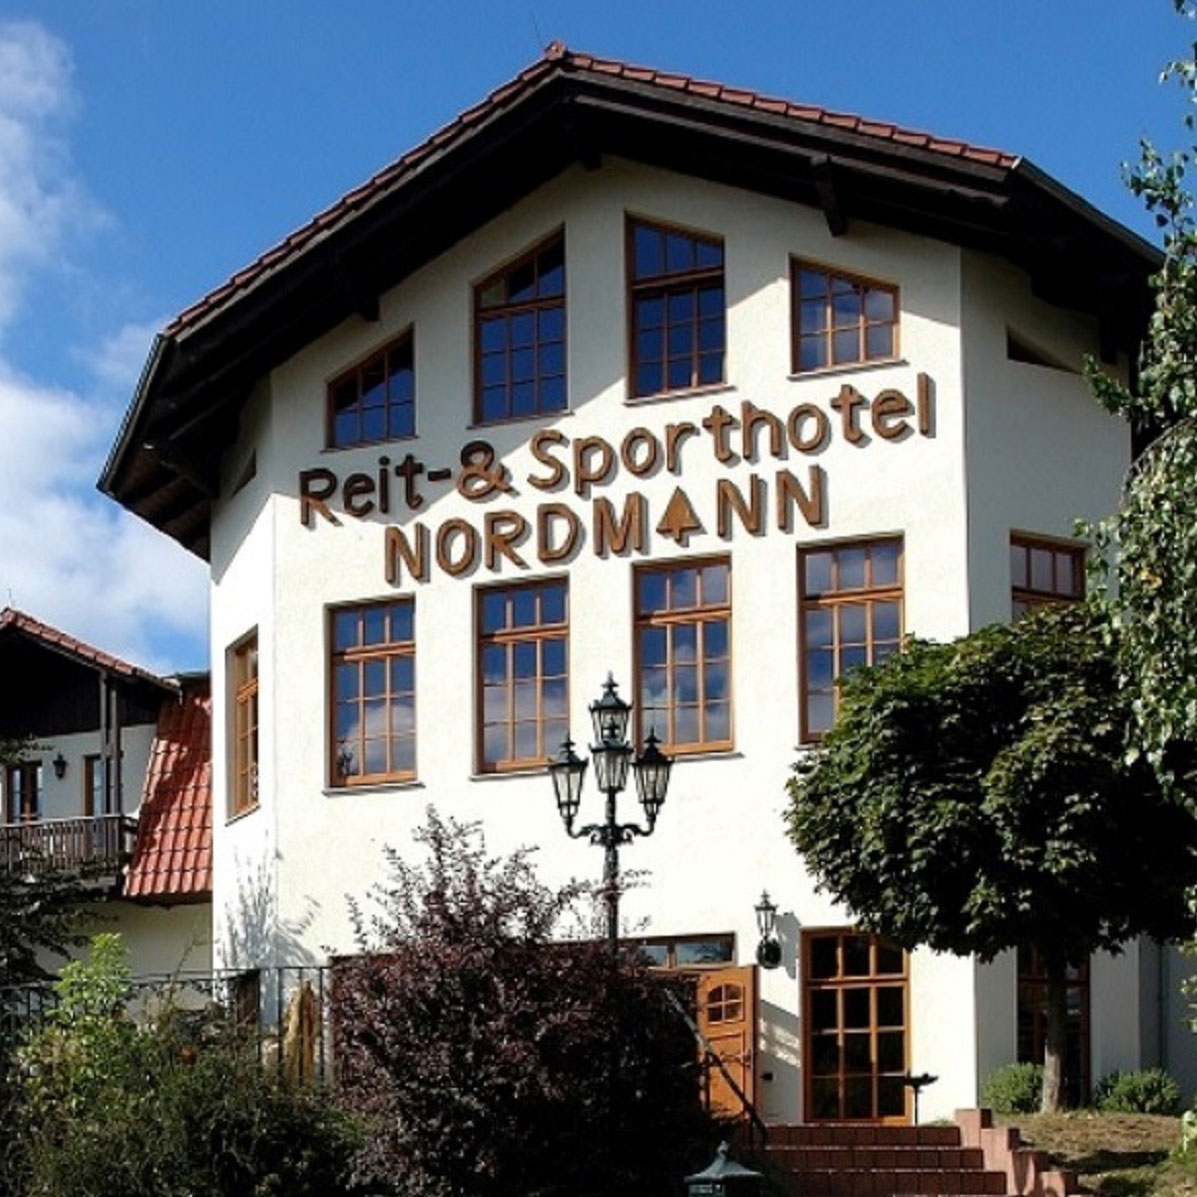 Reit- & Sporthotel Nordmann